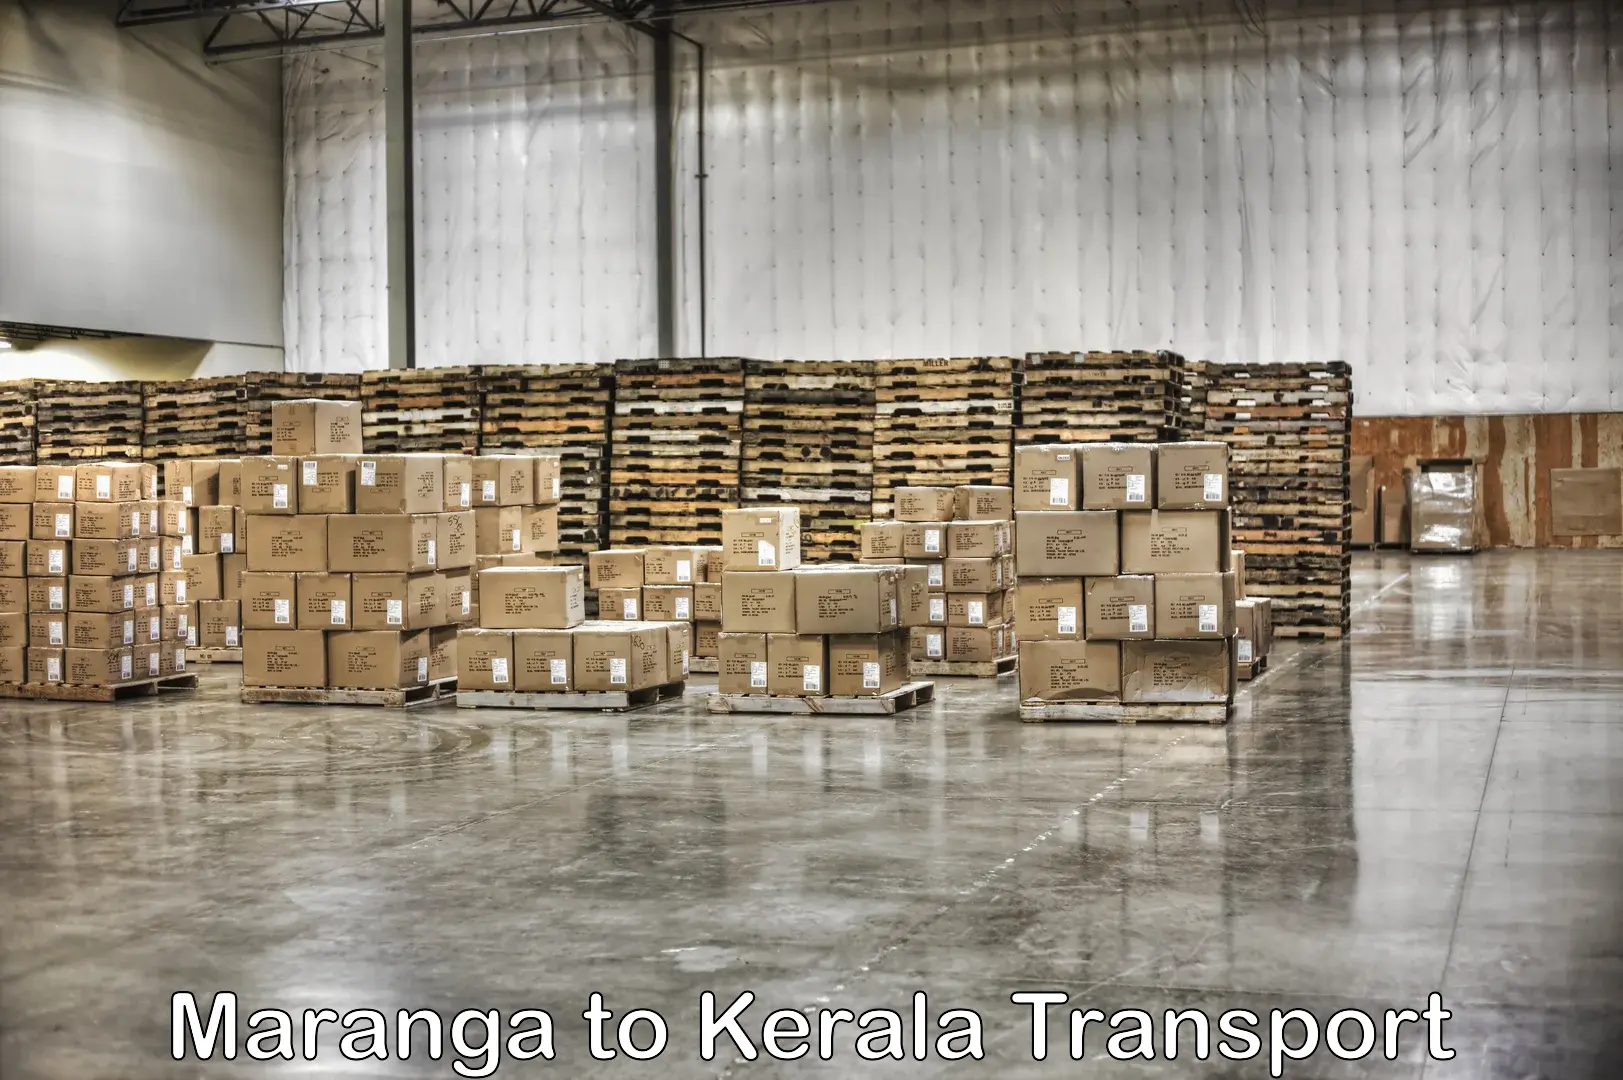 Truck transport companies in India in Maranga to Mundakayam